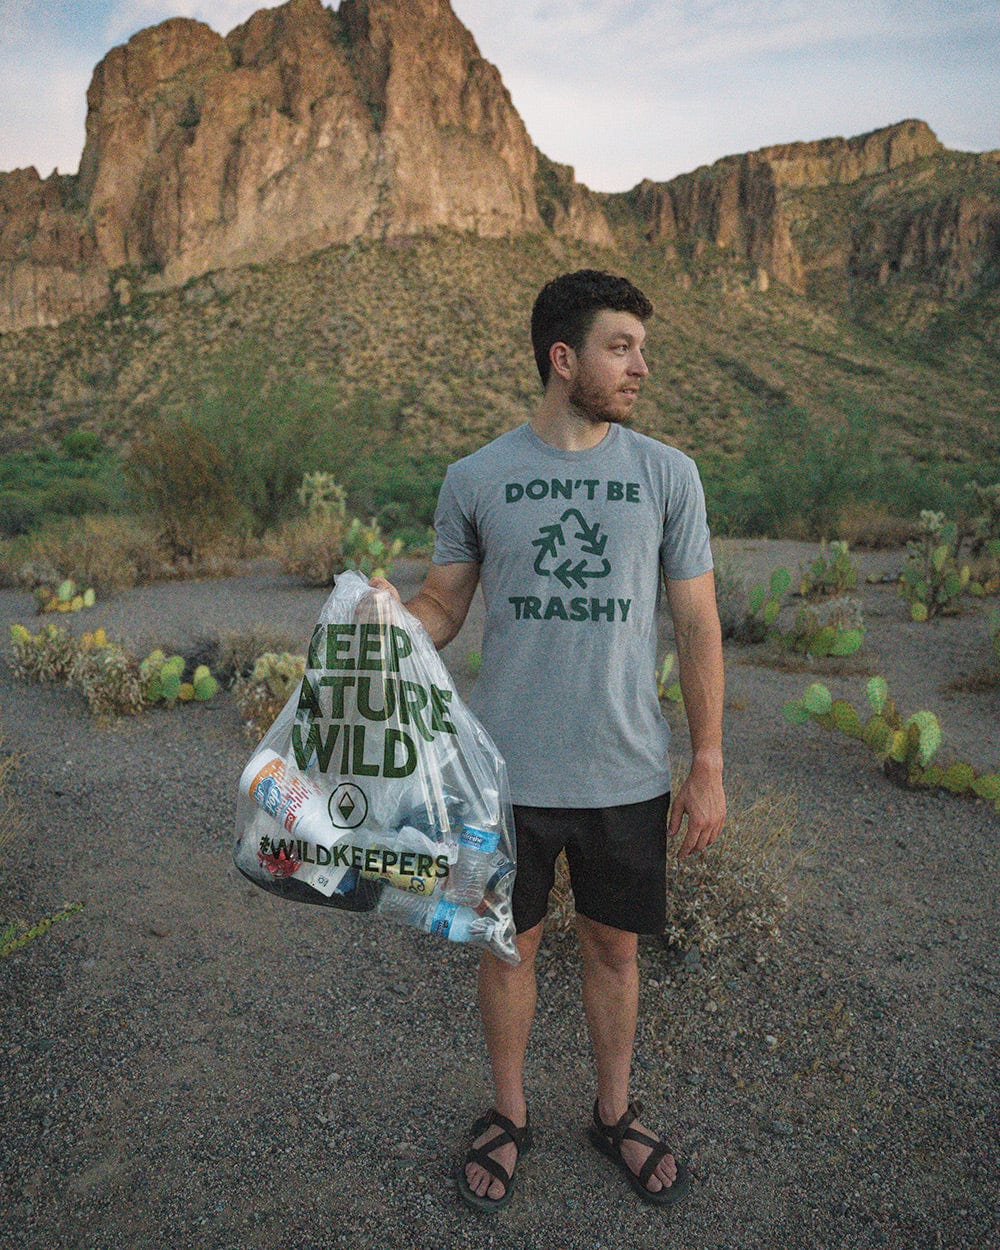 10 KNW Bio-Degradable Trash Bags